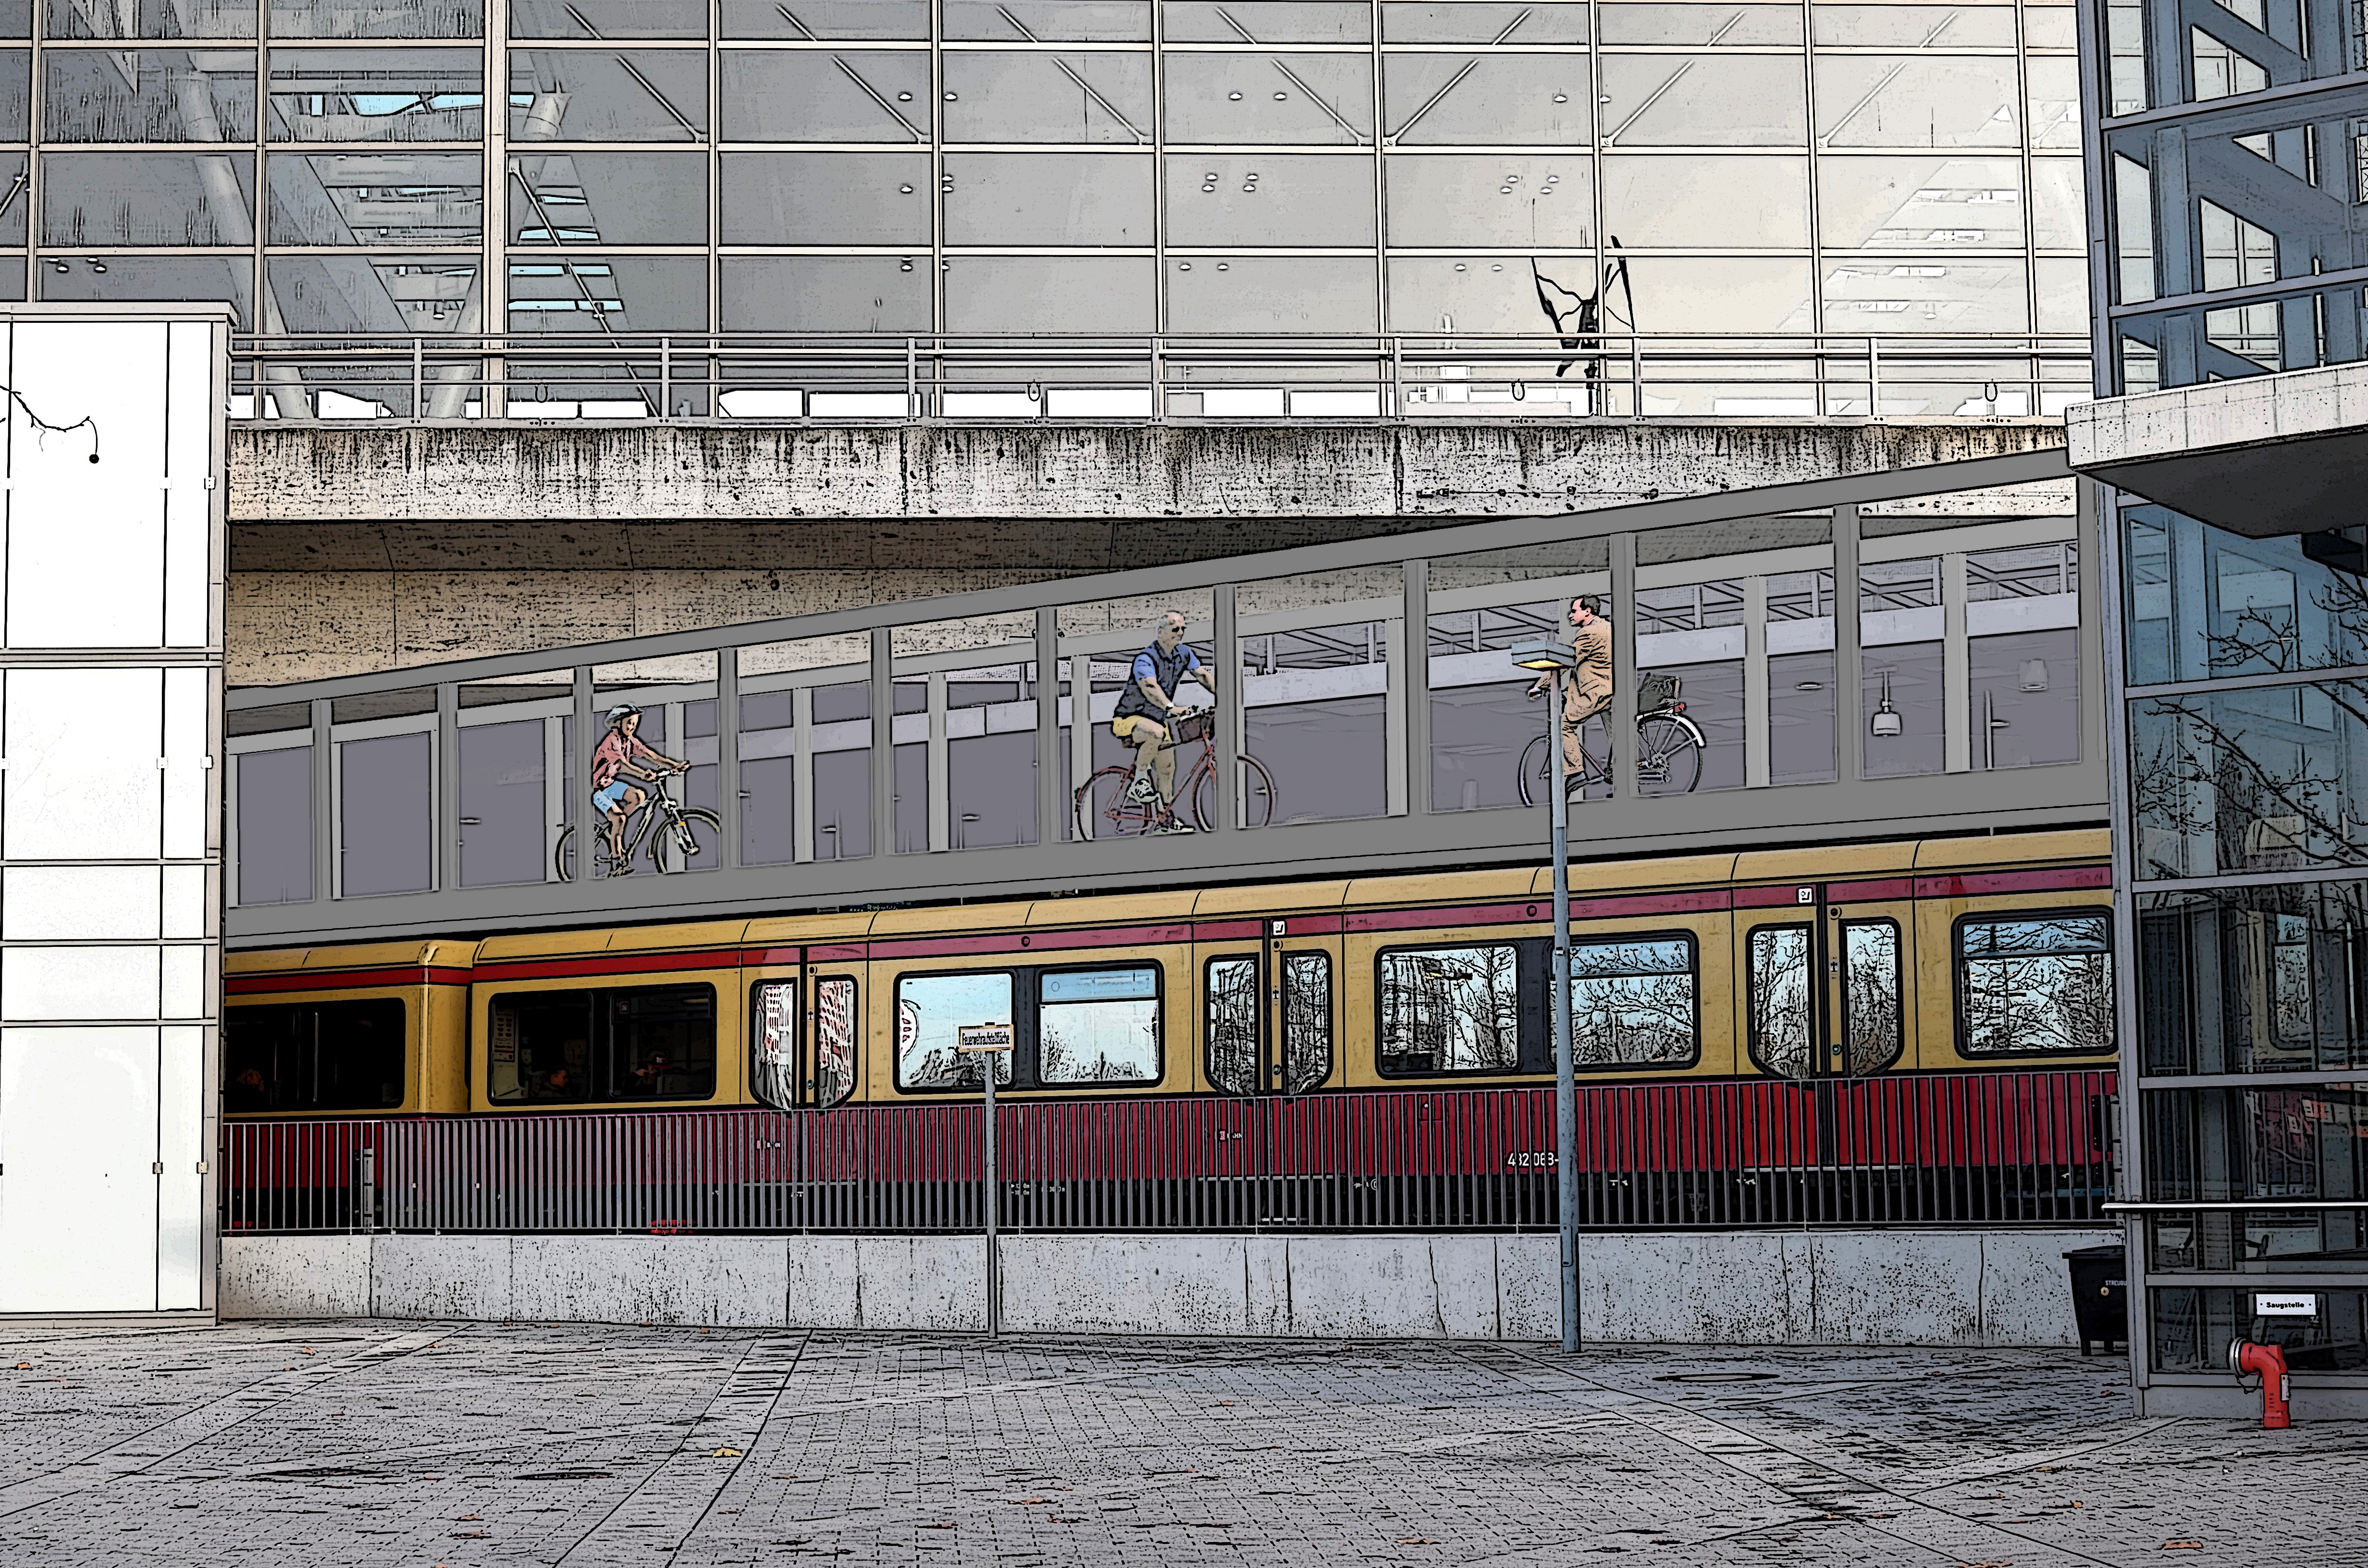 Bild: https://urban.to/radbahnhof-suedkreuz-berlin/downloads/radbahnhof-suedkreuz-berlin-04.jpg